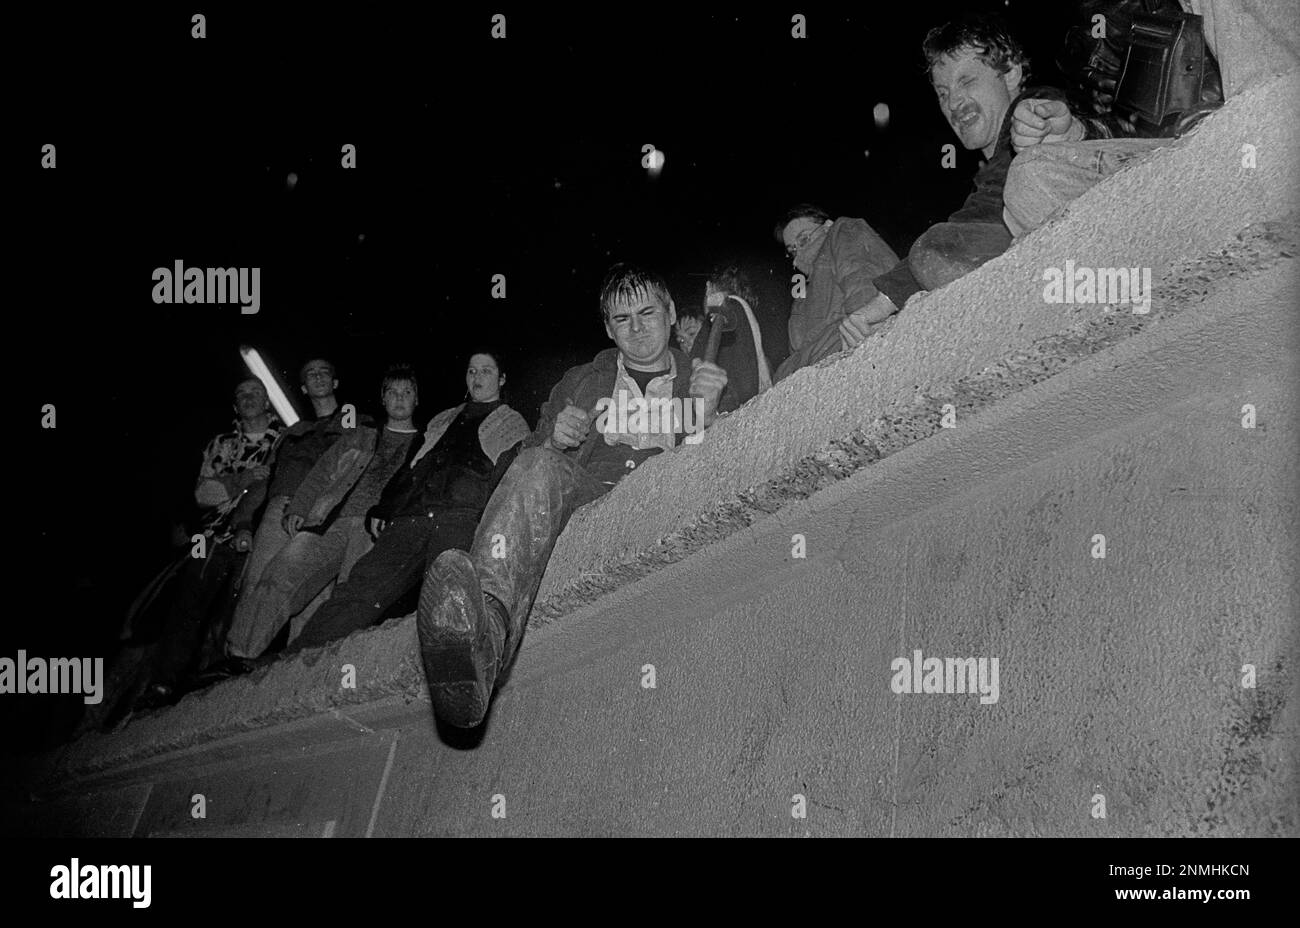 DDR, Berlin, 22.12.1989, Öffnung des Brandenburger Tors, die Mauer wird am Brandenburger Tor geöffnet, Menschen an der Mauer, Mann mit Hammer Stockfoto